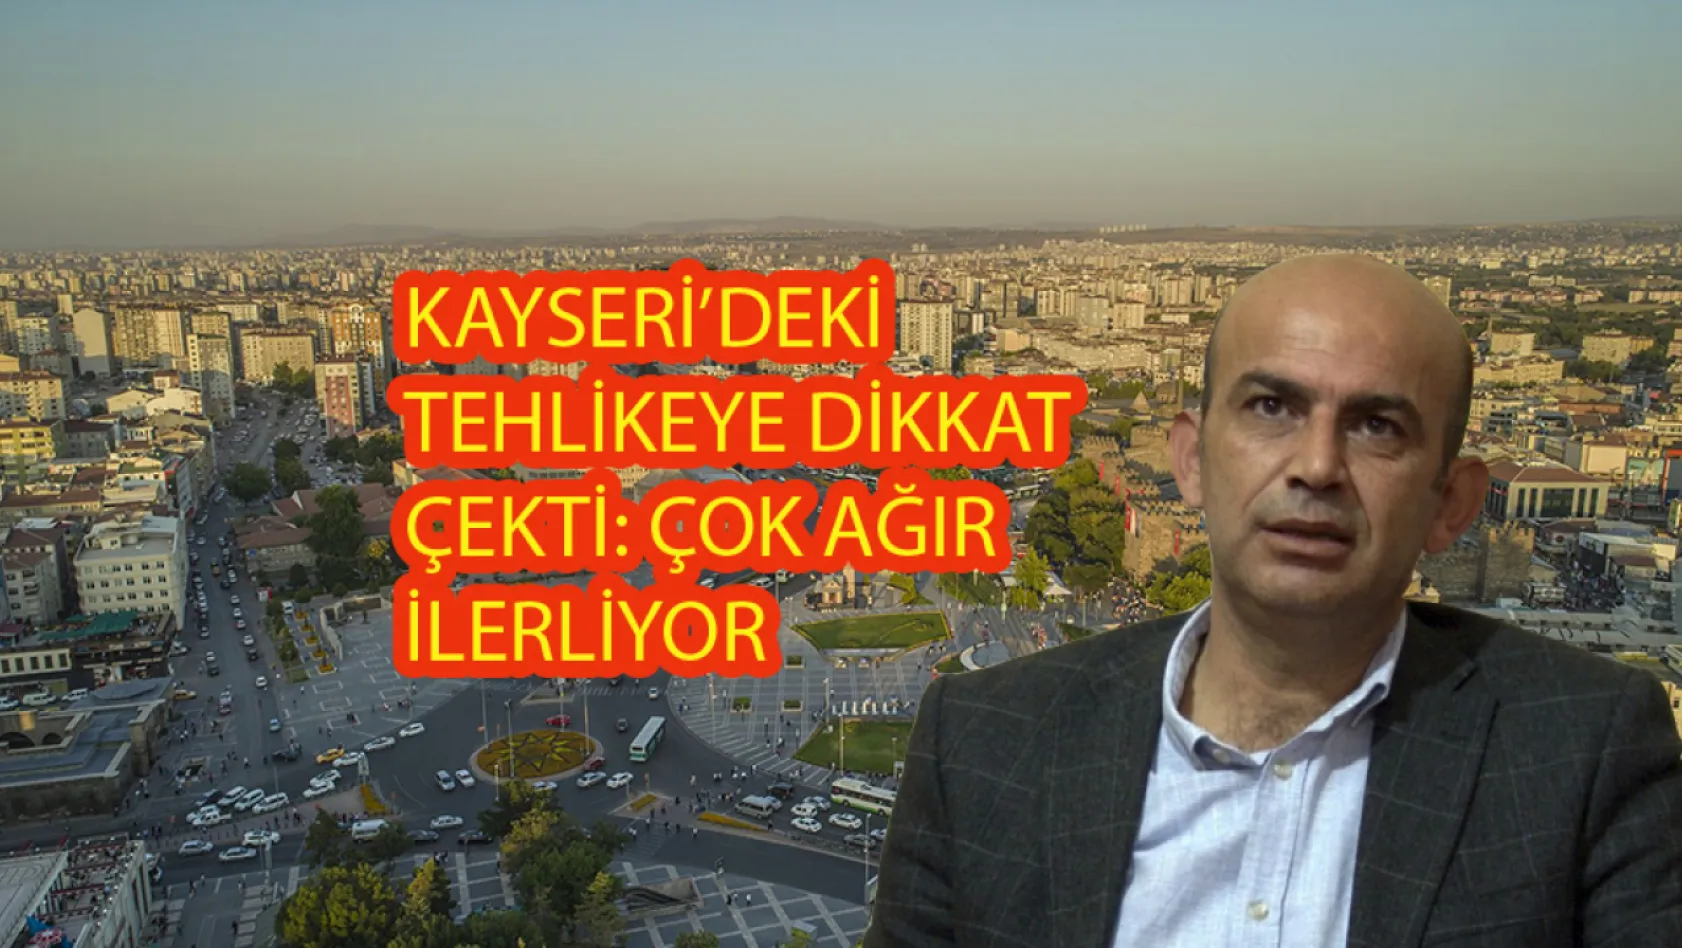 'Kayseri'de deprem olursa 3 bin-5 bin binanın yıkılma ihtimali var' demişti! O başkanla ilgili yeni gelişme